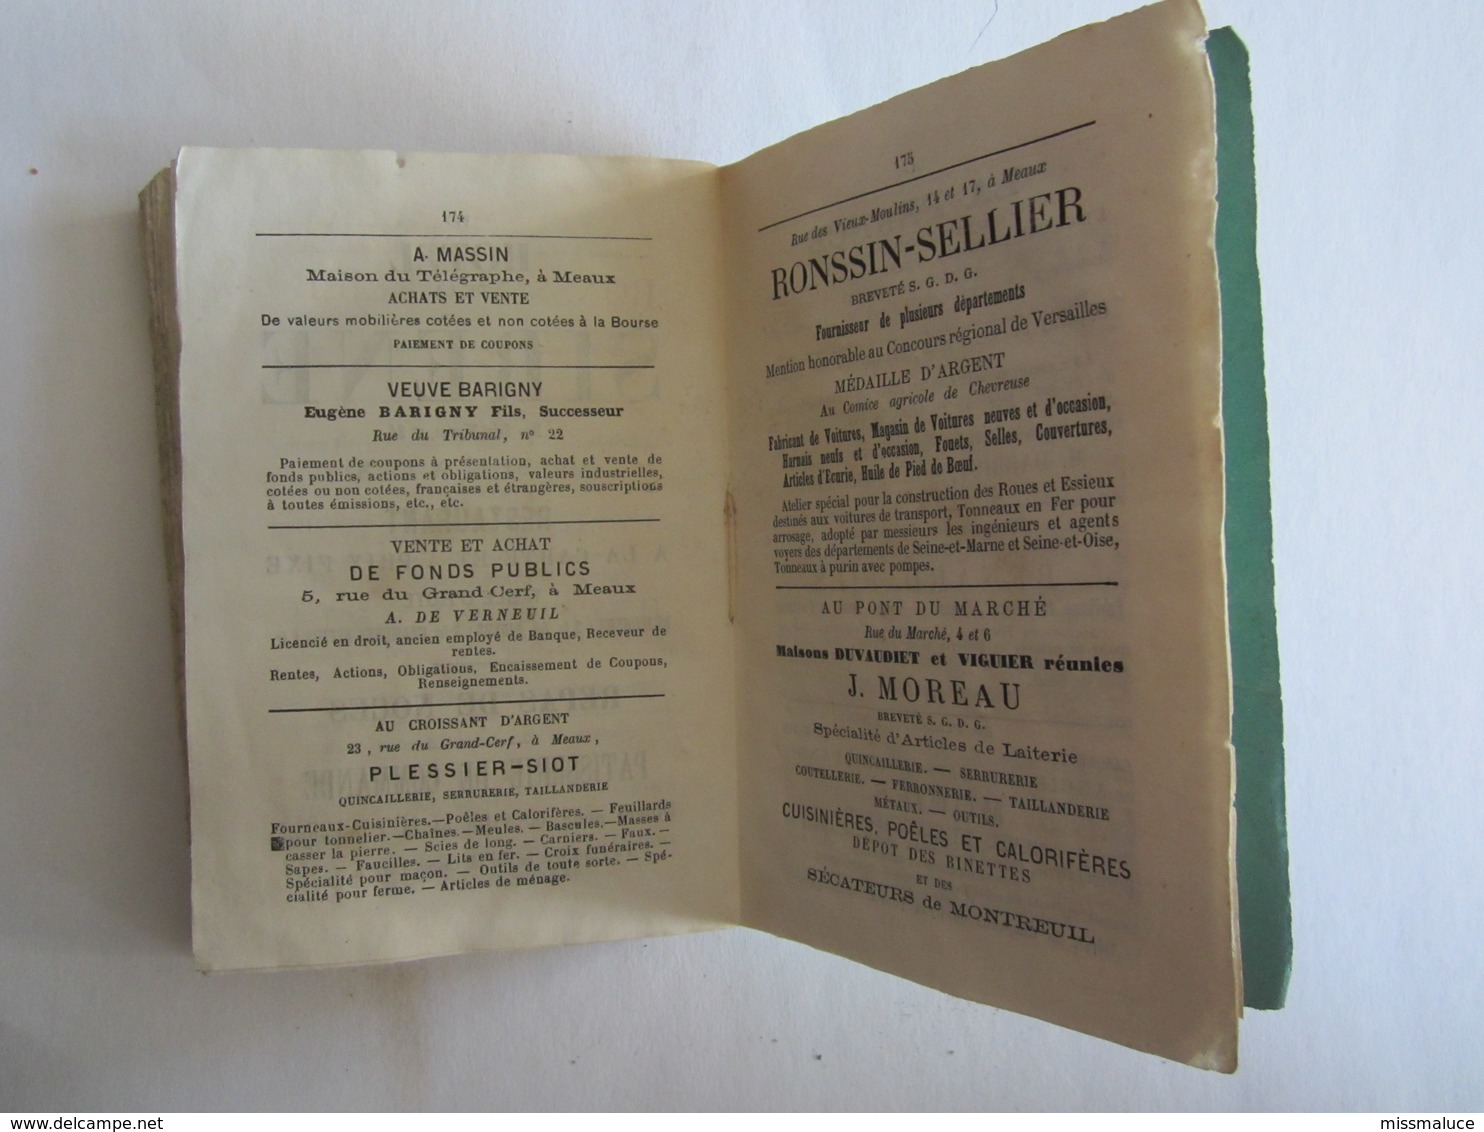 Almanach de Seine et Marne Diocèse de Meaux 1875 dans l'état Jouarre La Férté sous Jouarre